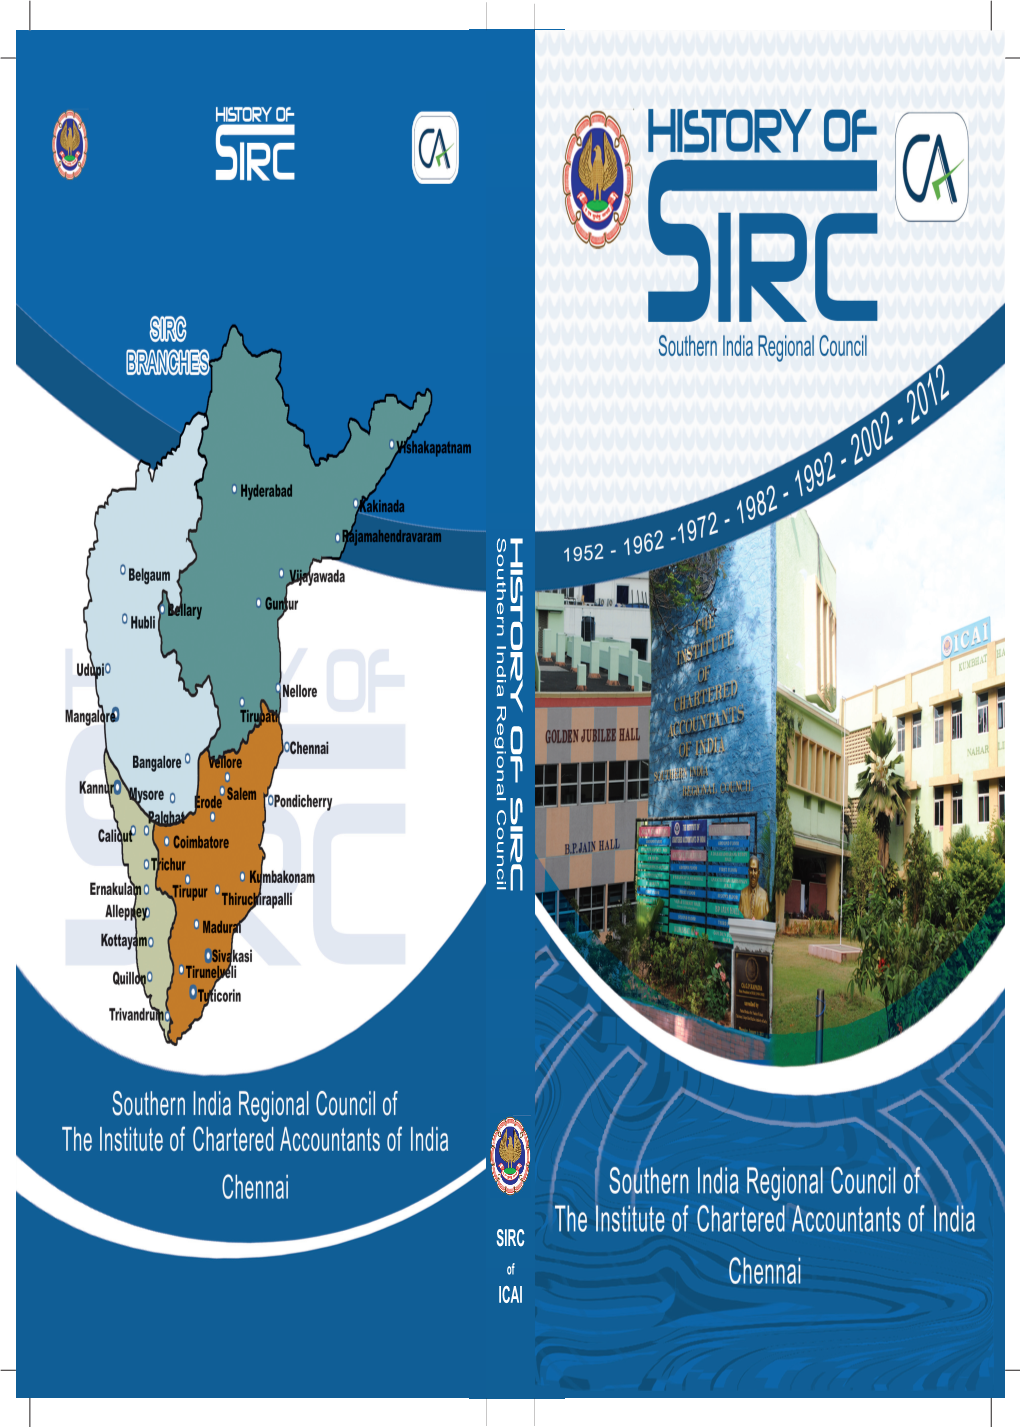 HIST O R Y of Sircsouthern India Regional Council